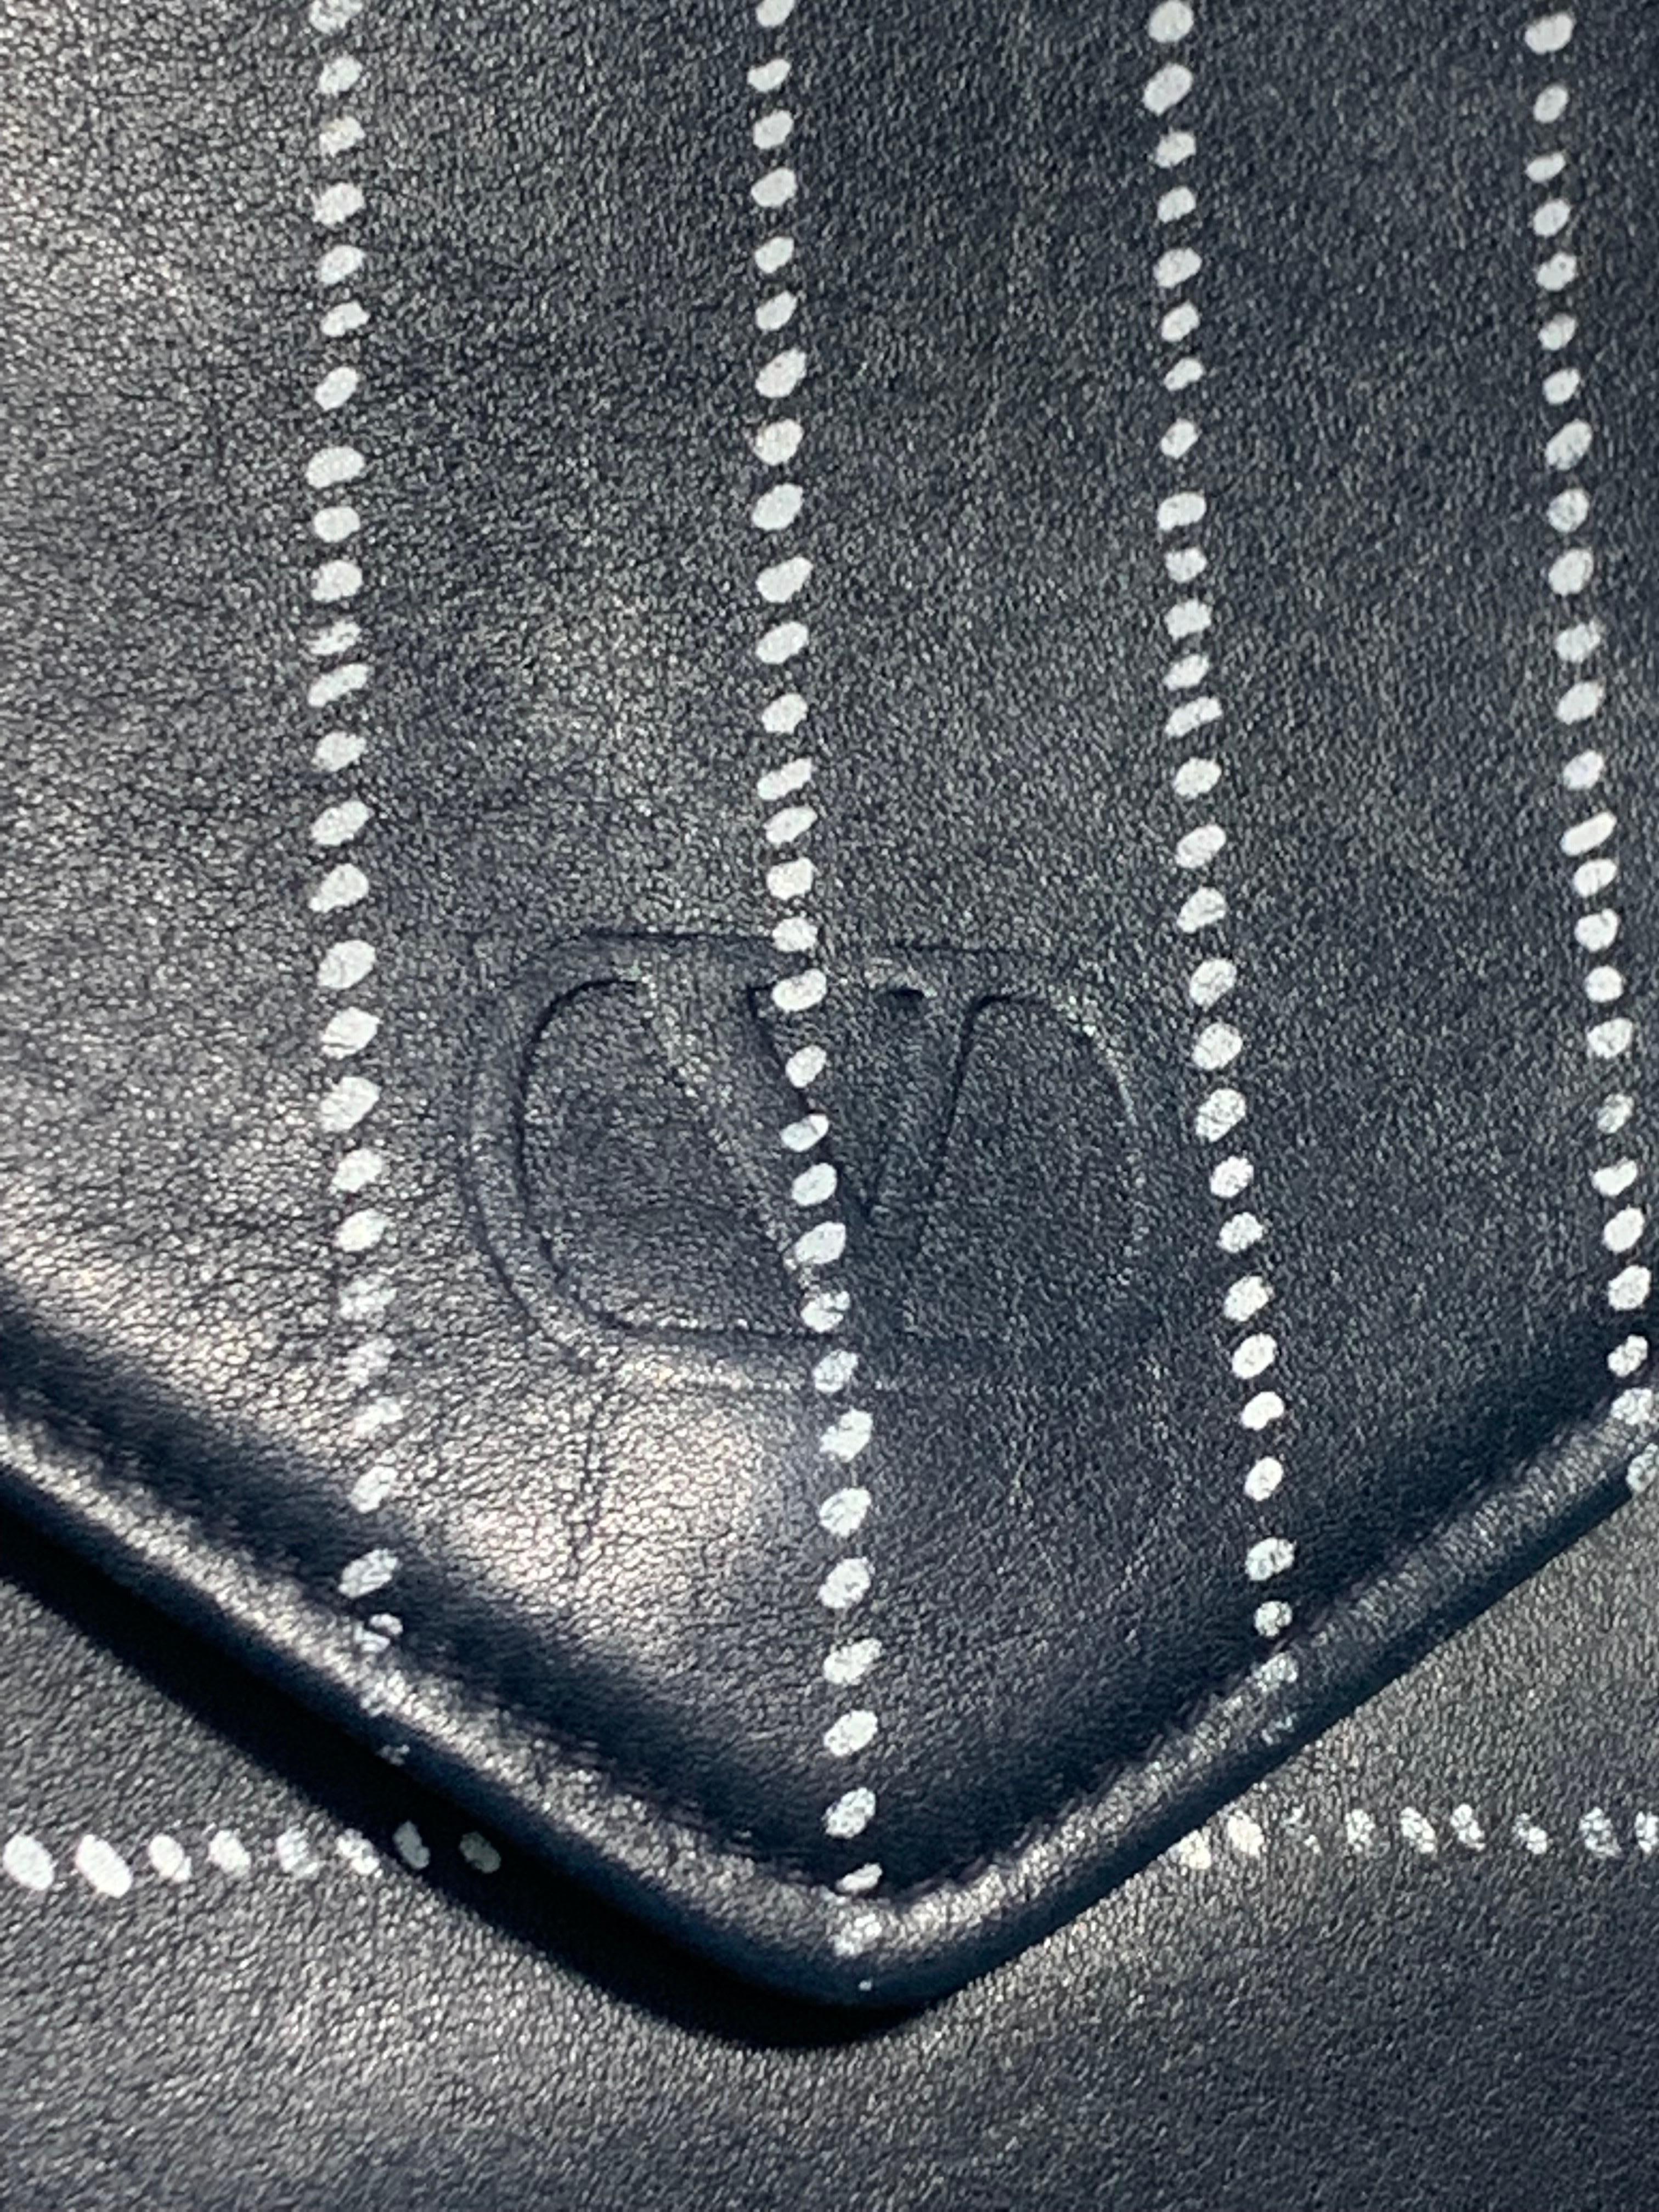 Pochette convertible en forme d'enveloppe en cuir d'agneau marine Valentino des années 1980, avec détails à rayures. 
La bandoulière croisée en chaîne peut être rentrée pour servir de pochette. Taille moyenne très utilisable pour accueillir un